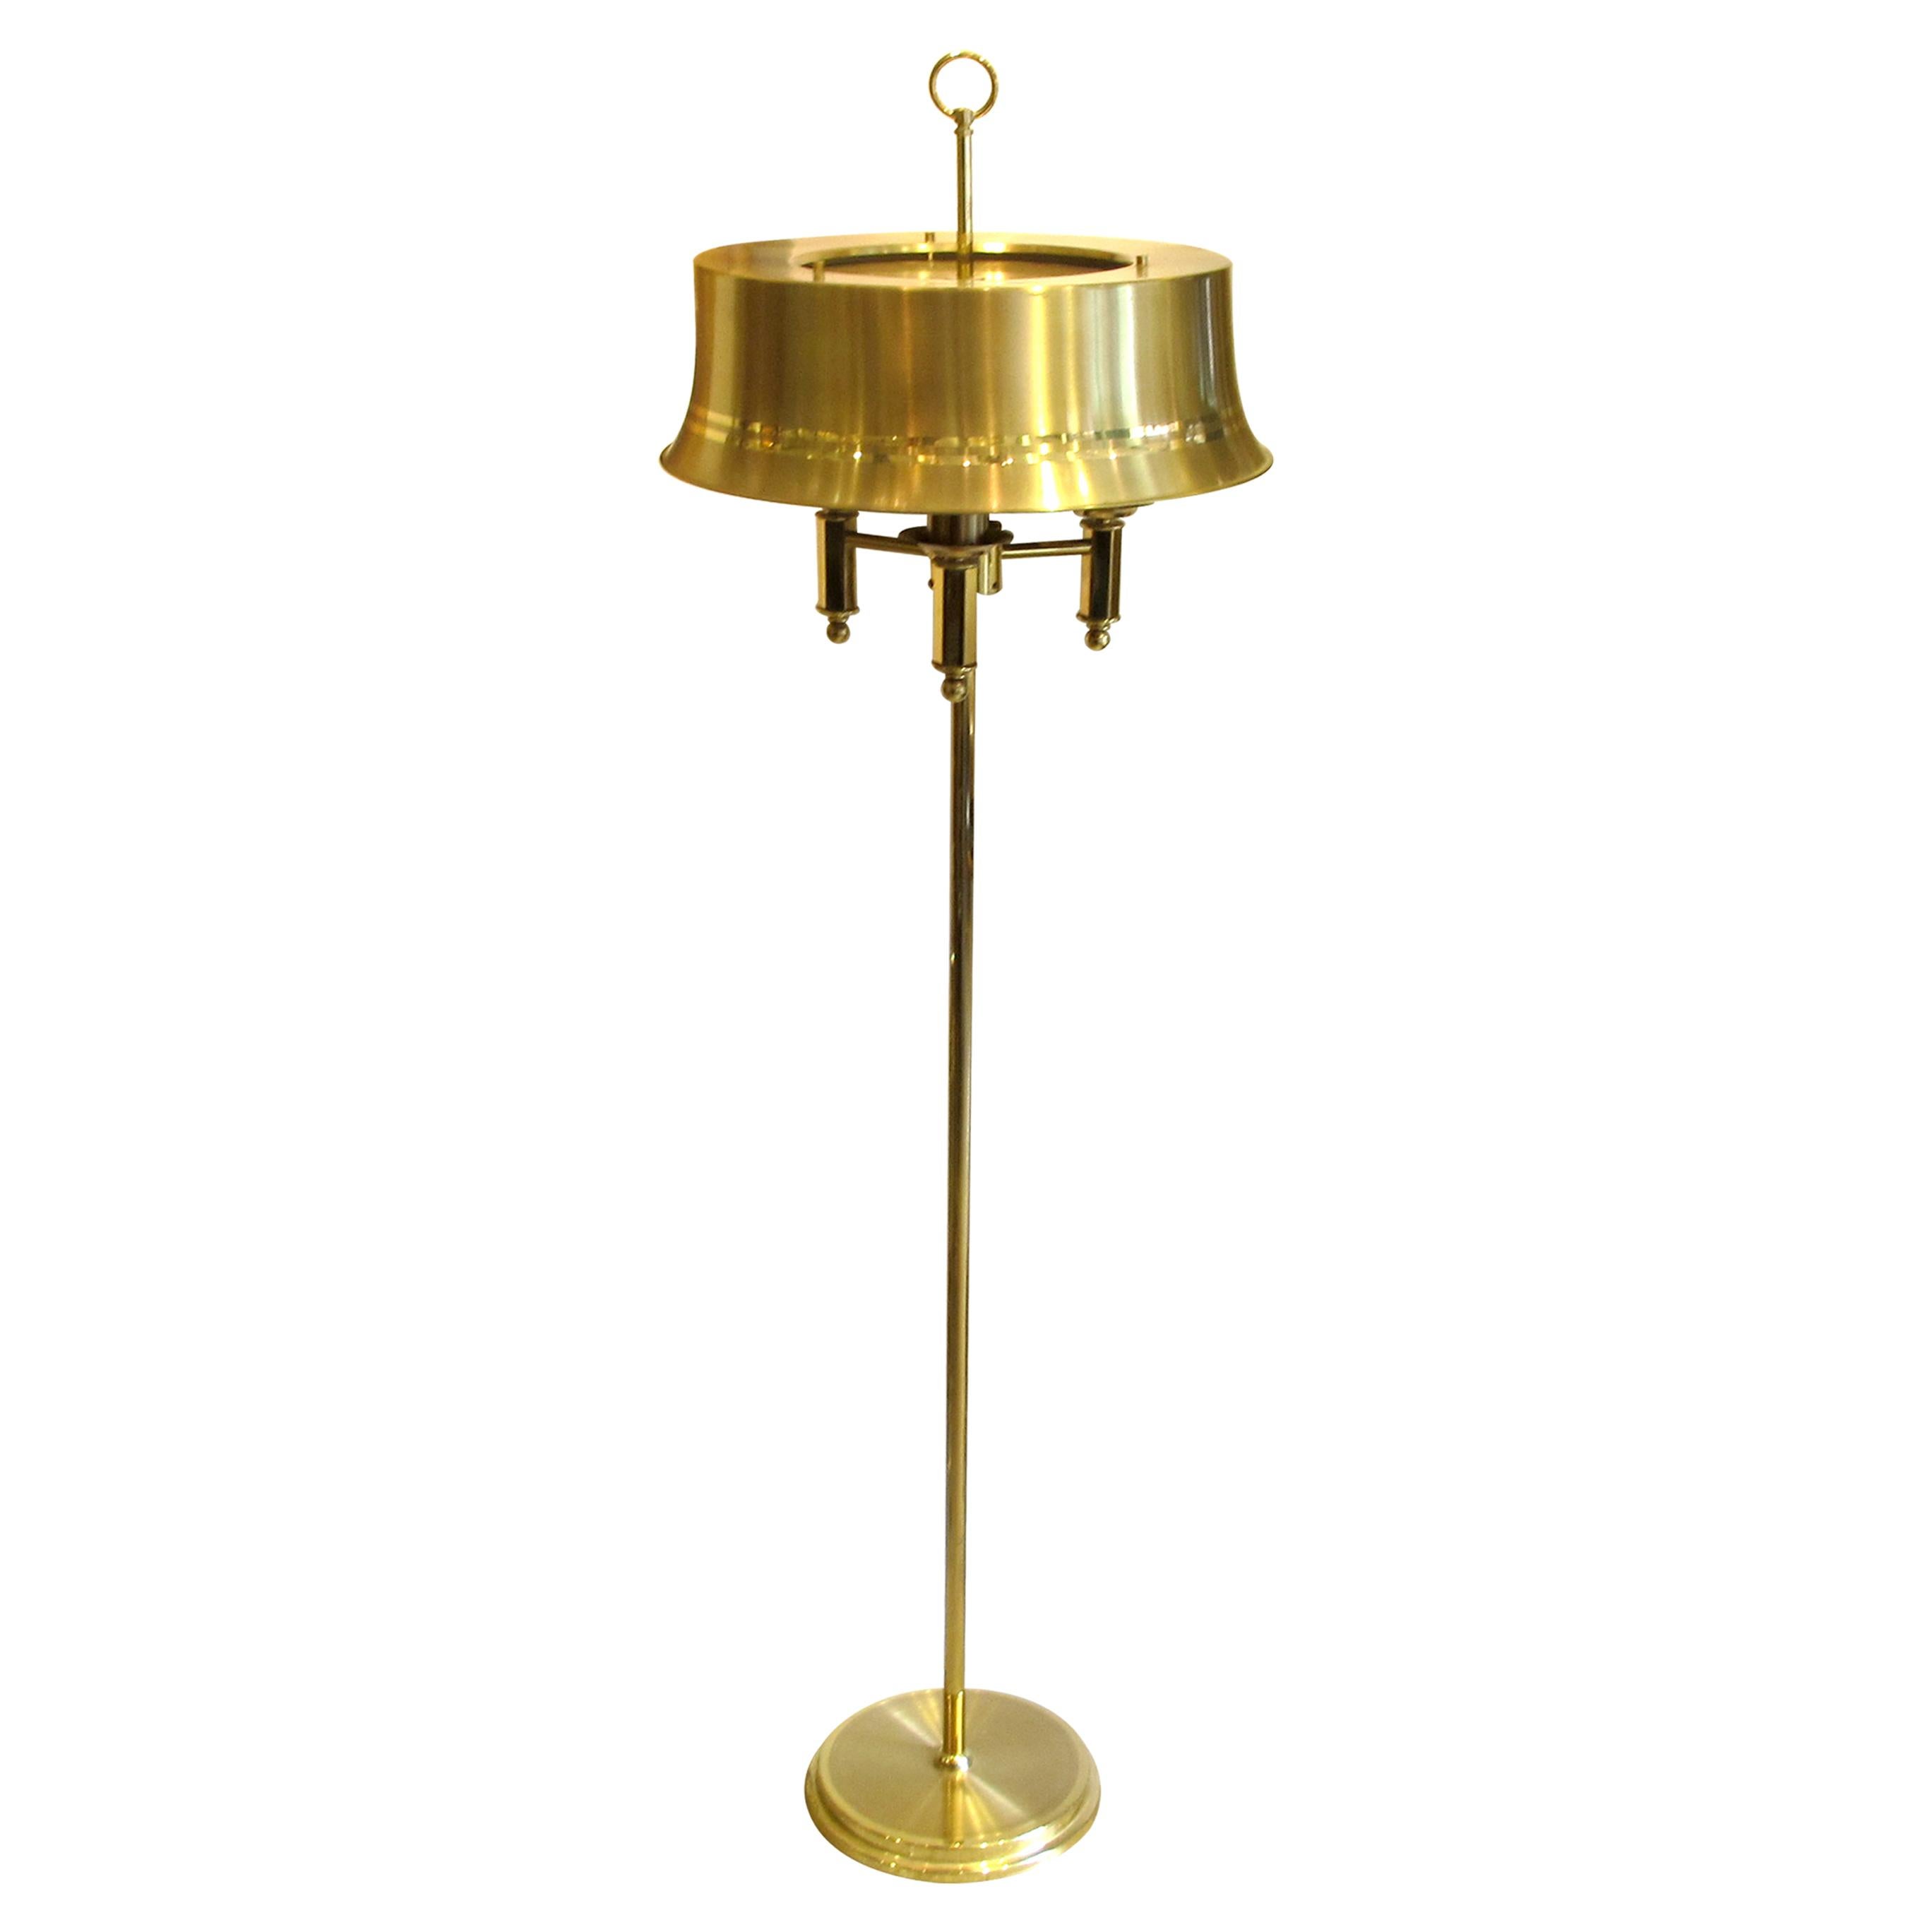 Paire de lampadaires en laiton très élégants, de style néoclassique anglais, suédois des années 1970. Chaque grande lampe en forme de chapeau est dotée de trois ampoules pour un éclairage chaleureux et magnifique. Les lampadaires sont en très bon